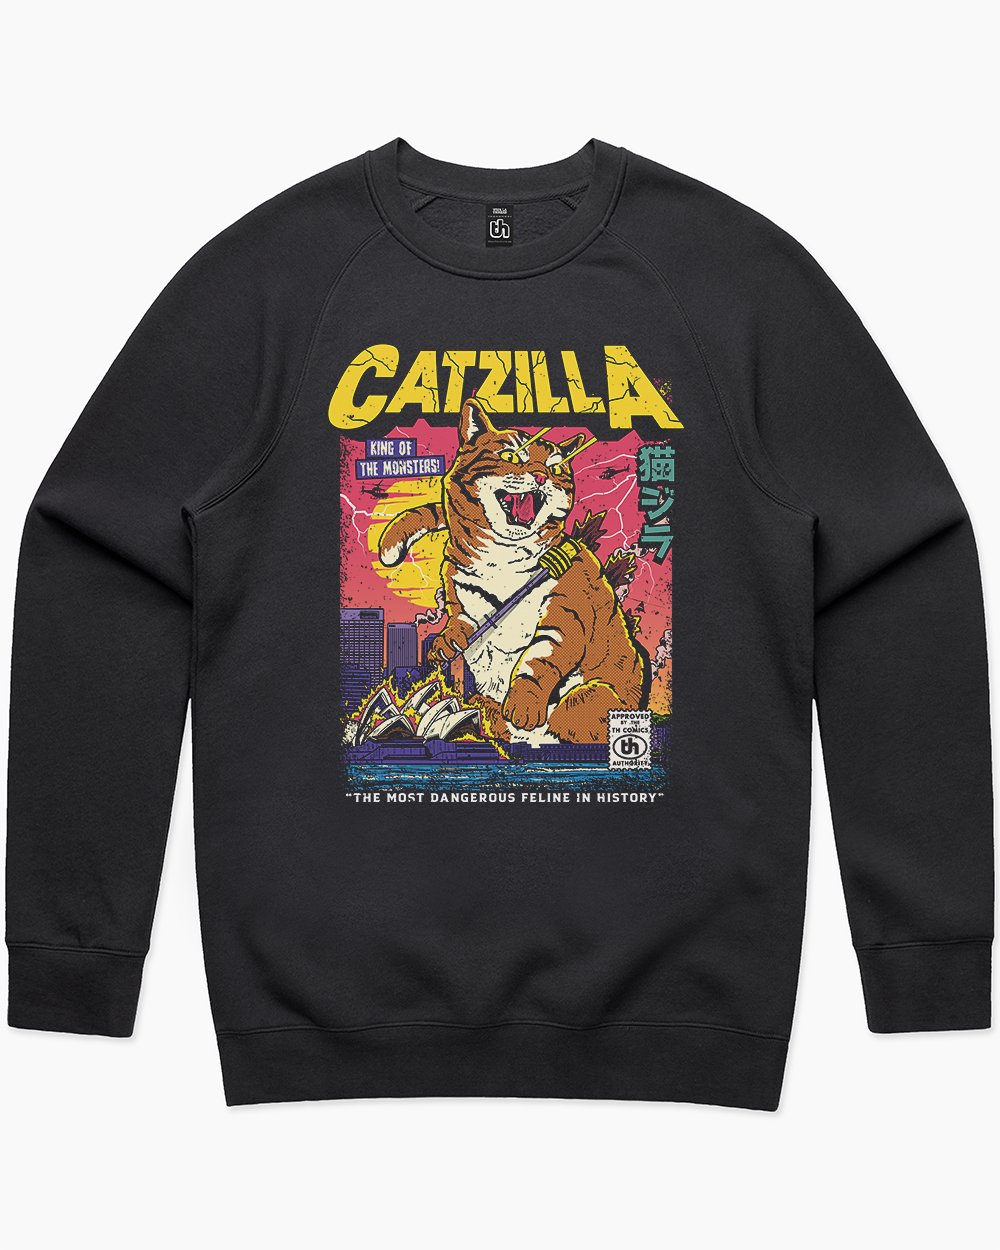 Catzilla Retro Titan Sweater Australia Online #colour_black